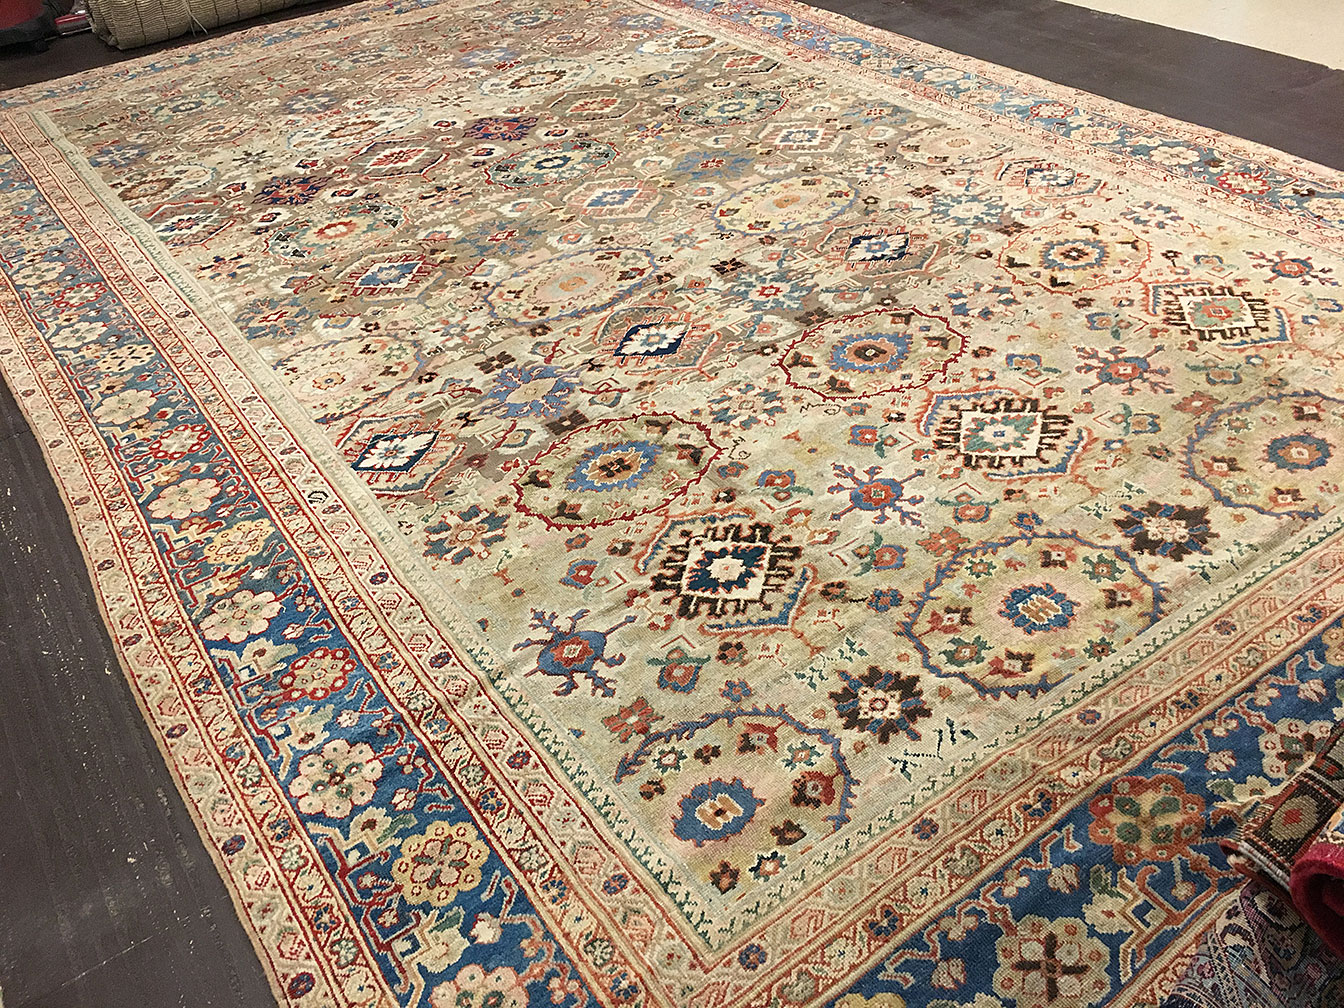 Antique sultan abad Carpet - # 52481